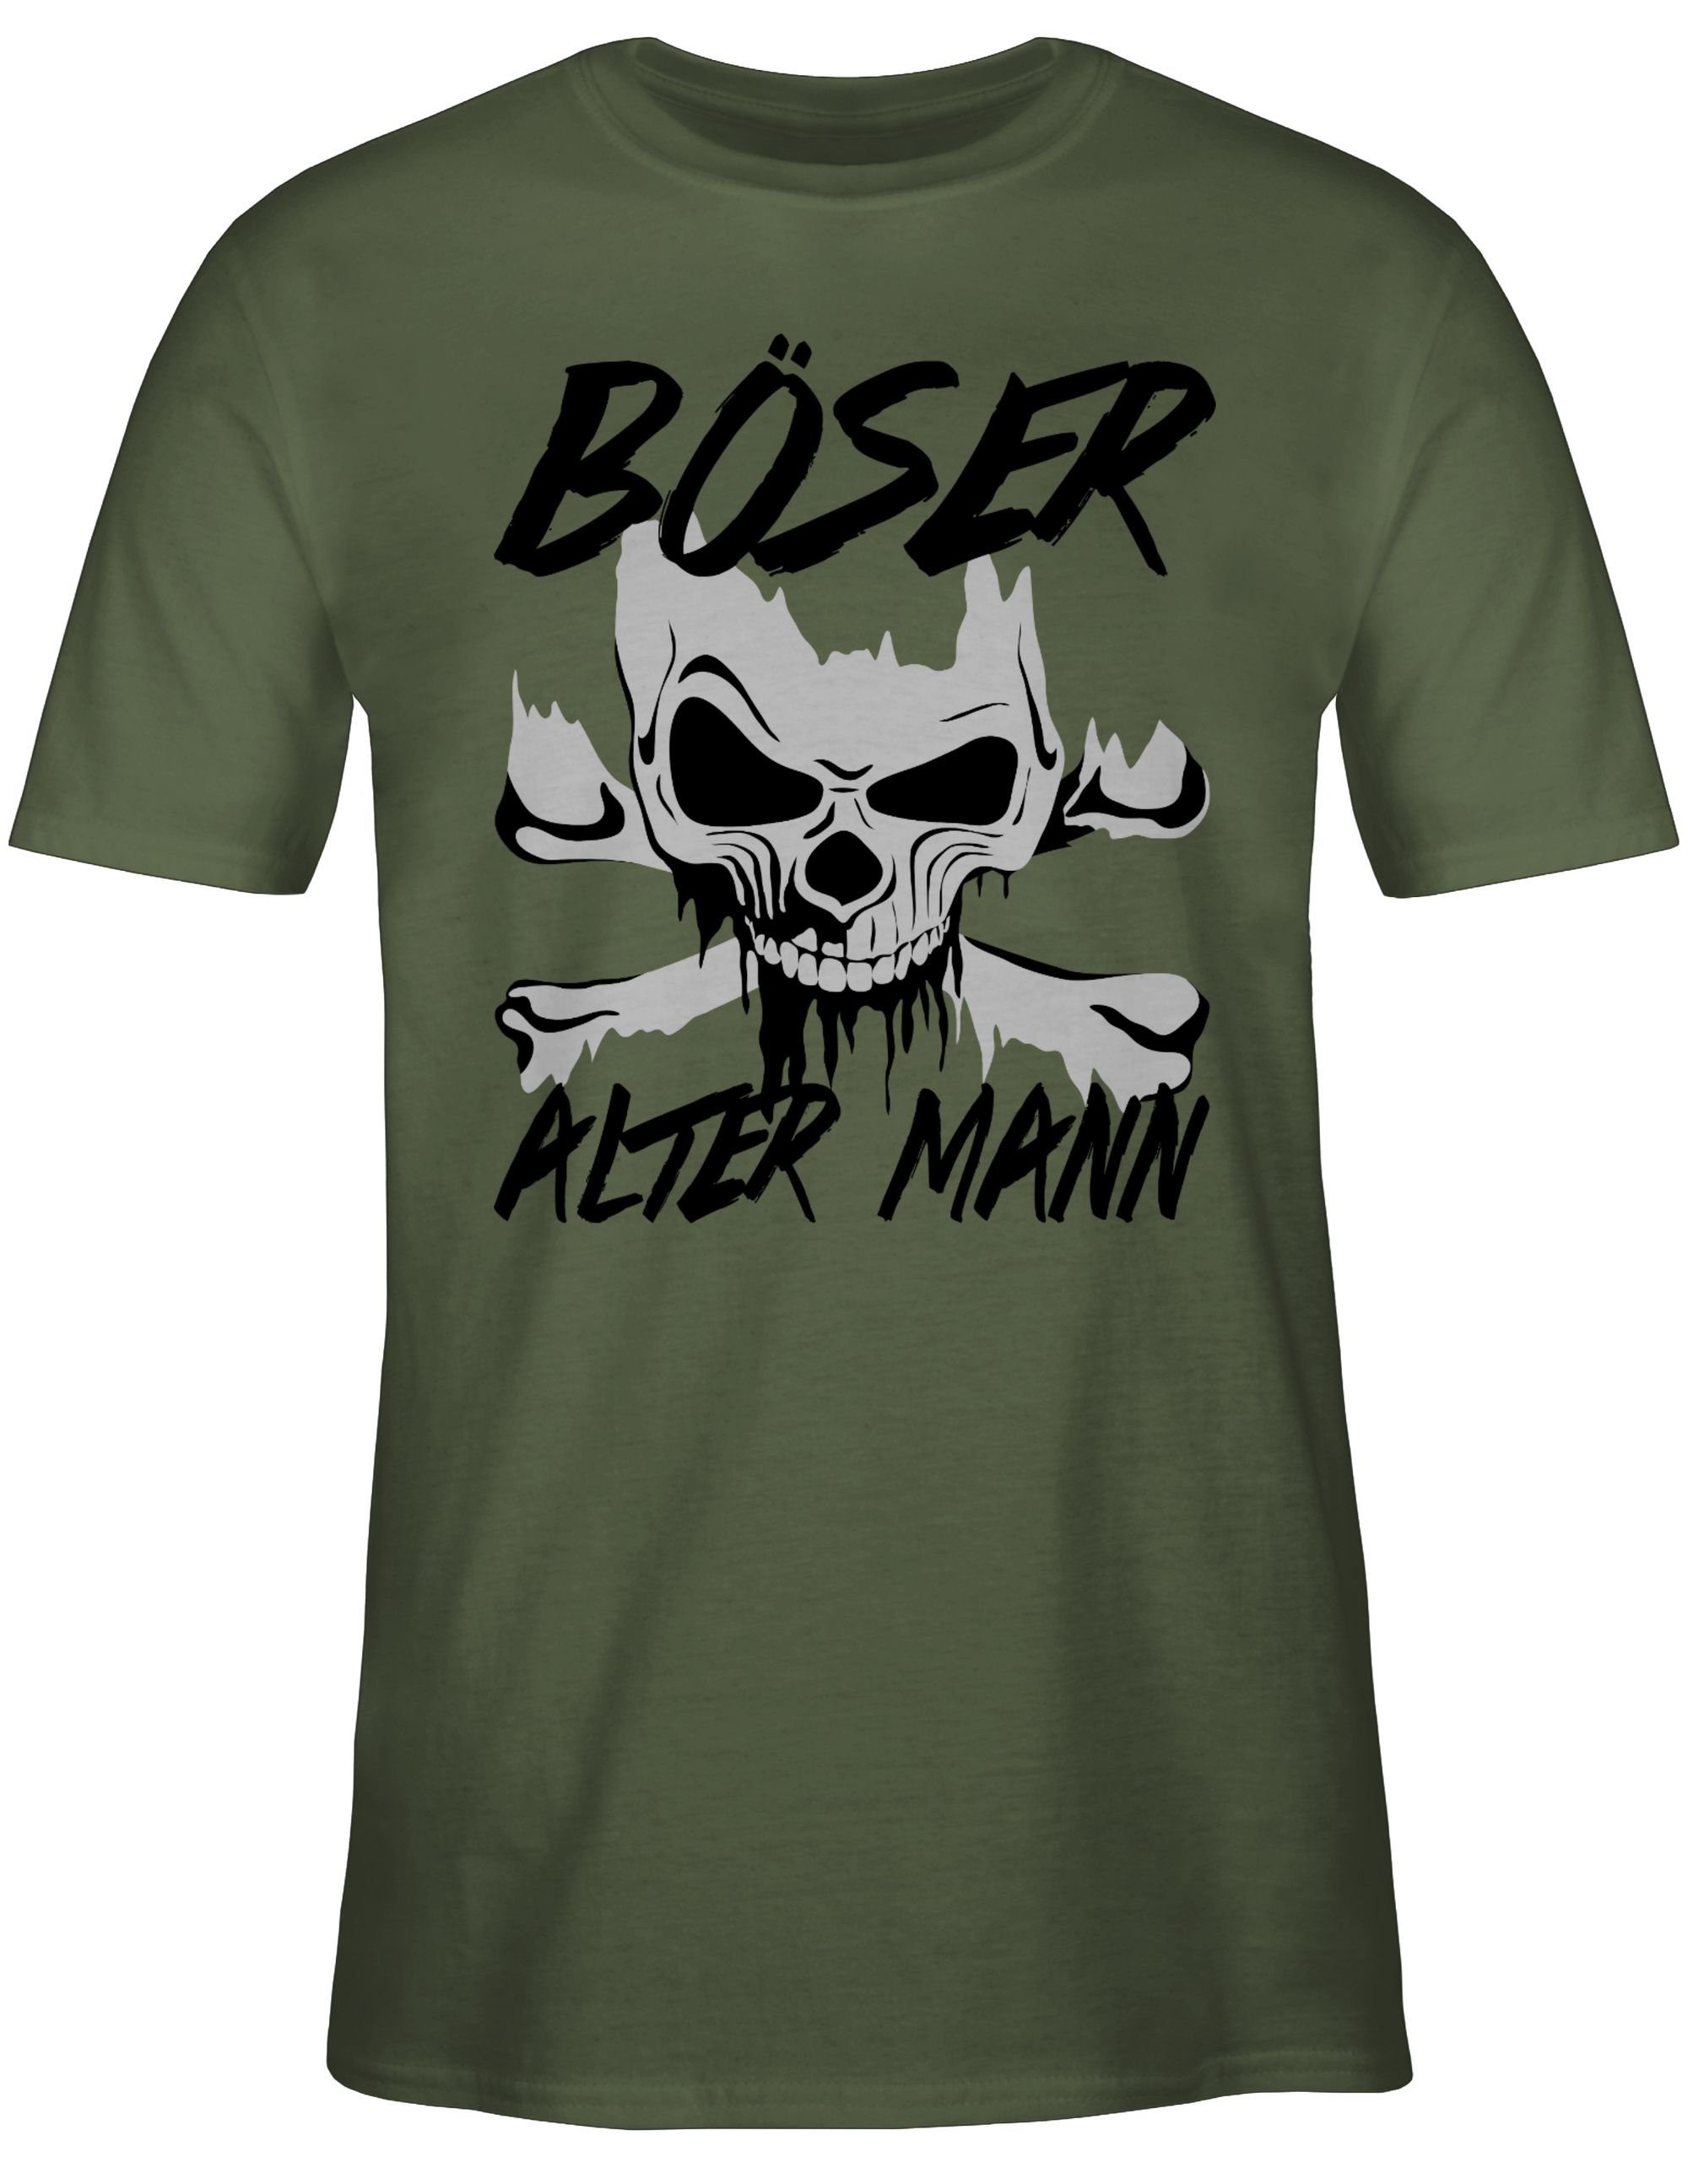 Grün Piraten Shirtracer & - 2 Mann T-Shirt Totenkopf Böser alter grau Army